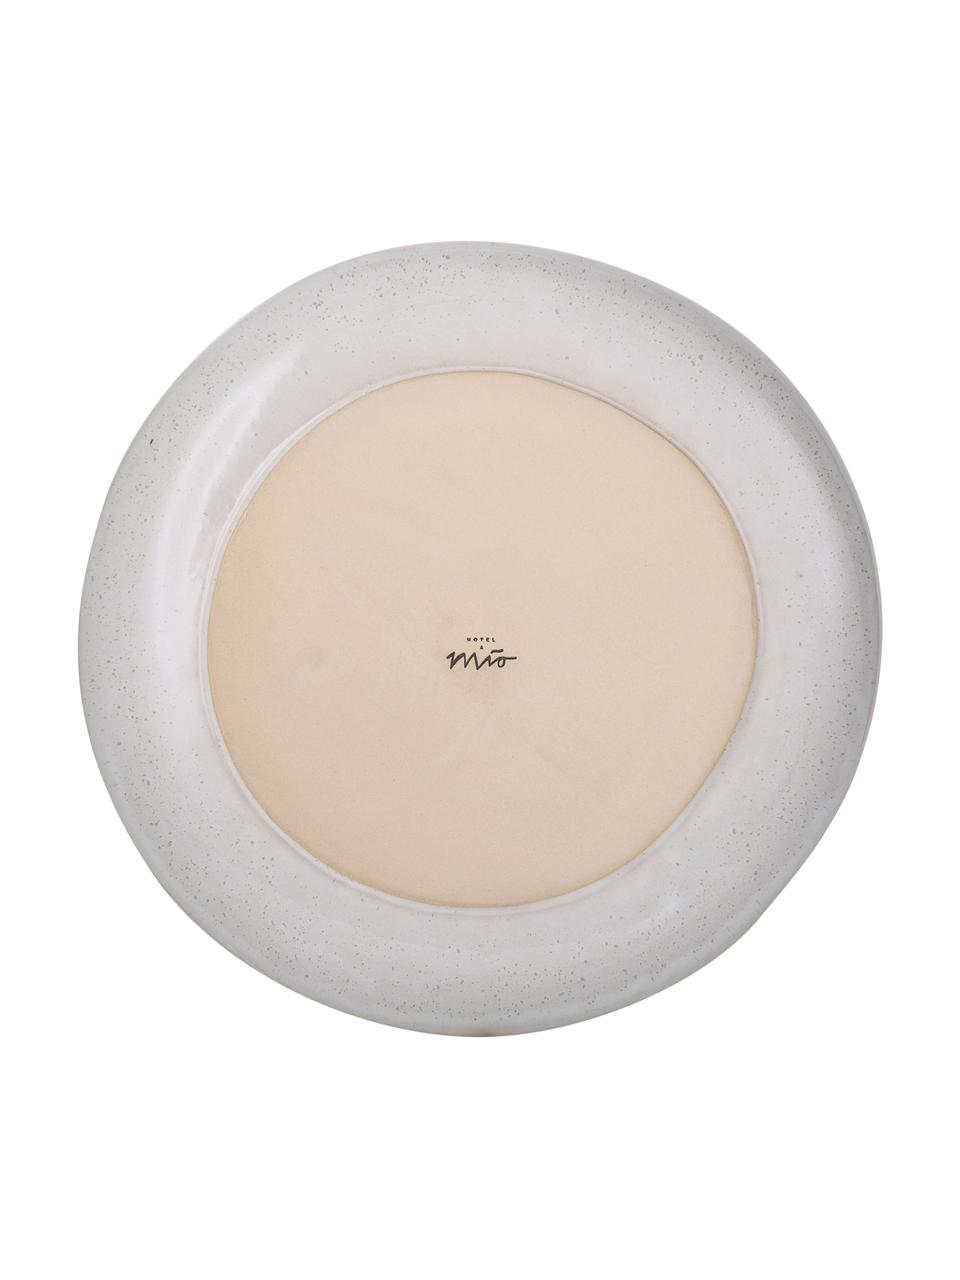 Ručně malovaný mělký talíř s reaktivní glazurou Areia, Mátová, tlumeně bílá, béžová